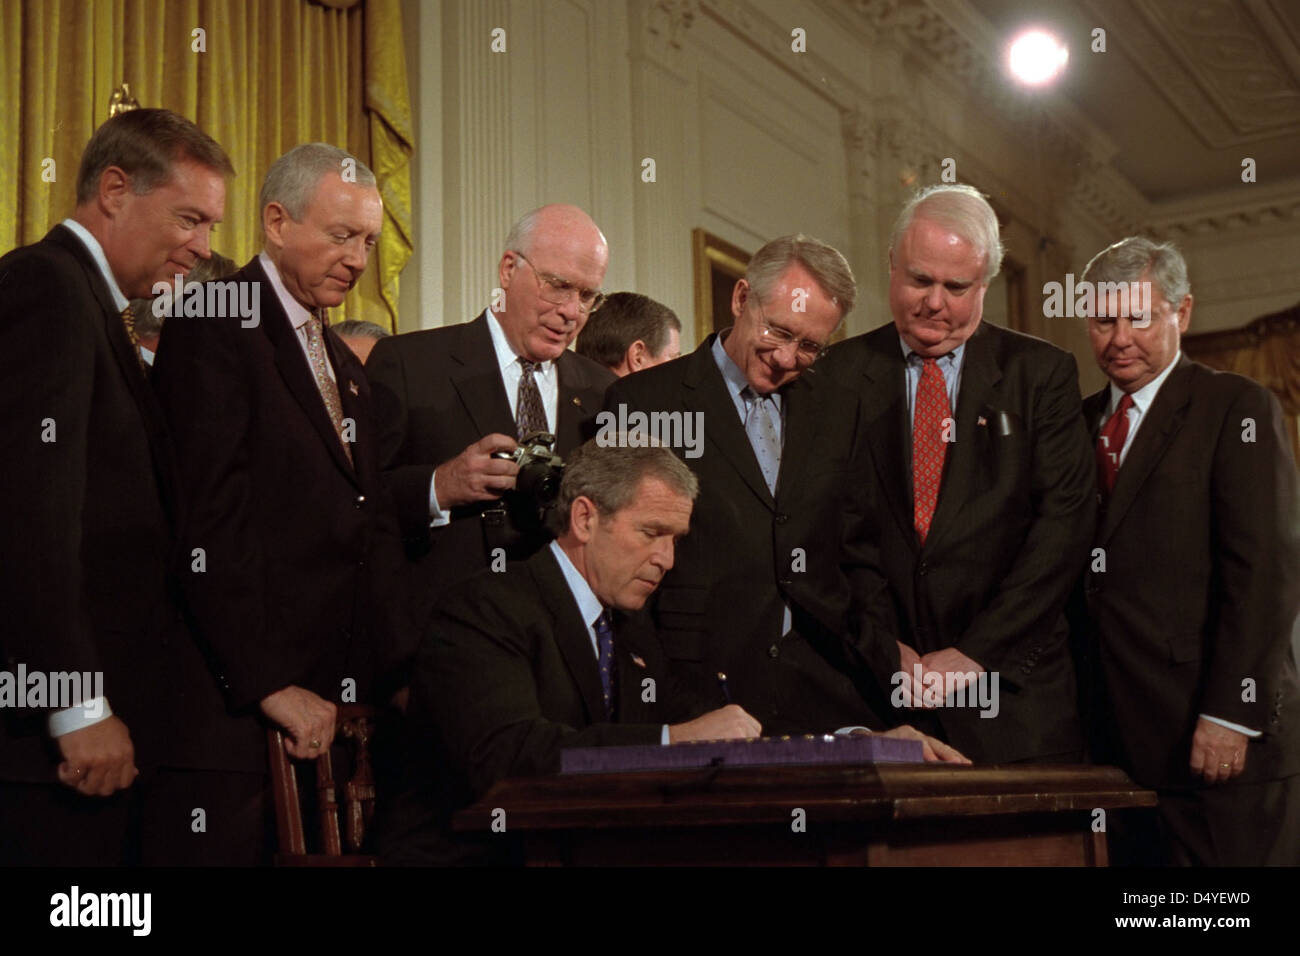 El presidente George W. Bush firma la Ley Patriota de los Estados Unidos el viernes, 26 de octubre de 2001, en la Sala este de la Casa Blanca. Detrás del Presidente de izquierda están: El Fiscal General de los Estados Unidos John Ashcroft; el Senador Orrin Hatch, R-Utah; el Senador Patrick Leahy, D-VT; el Senador Harry Reid, D-Nev; el Rep. James Sensenbrenner de Wisconsin, y el Senador Bob Graham, D-Fla Foto de Eric Draper, cortesía de la Biblioteca Presidencial George W. Bush Foto de stock